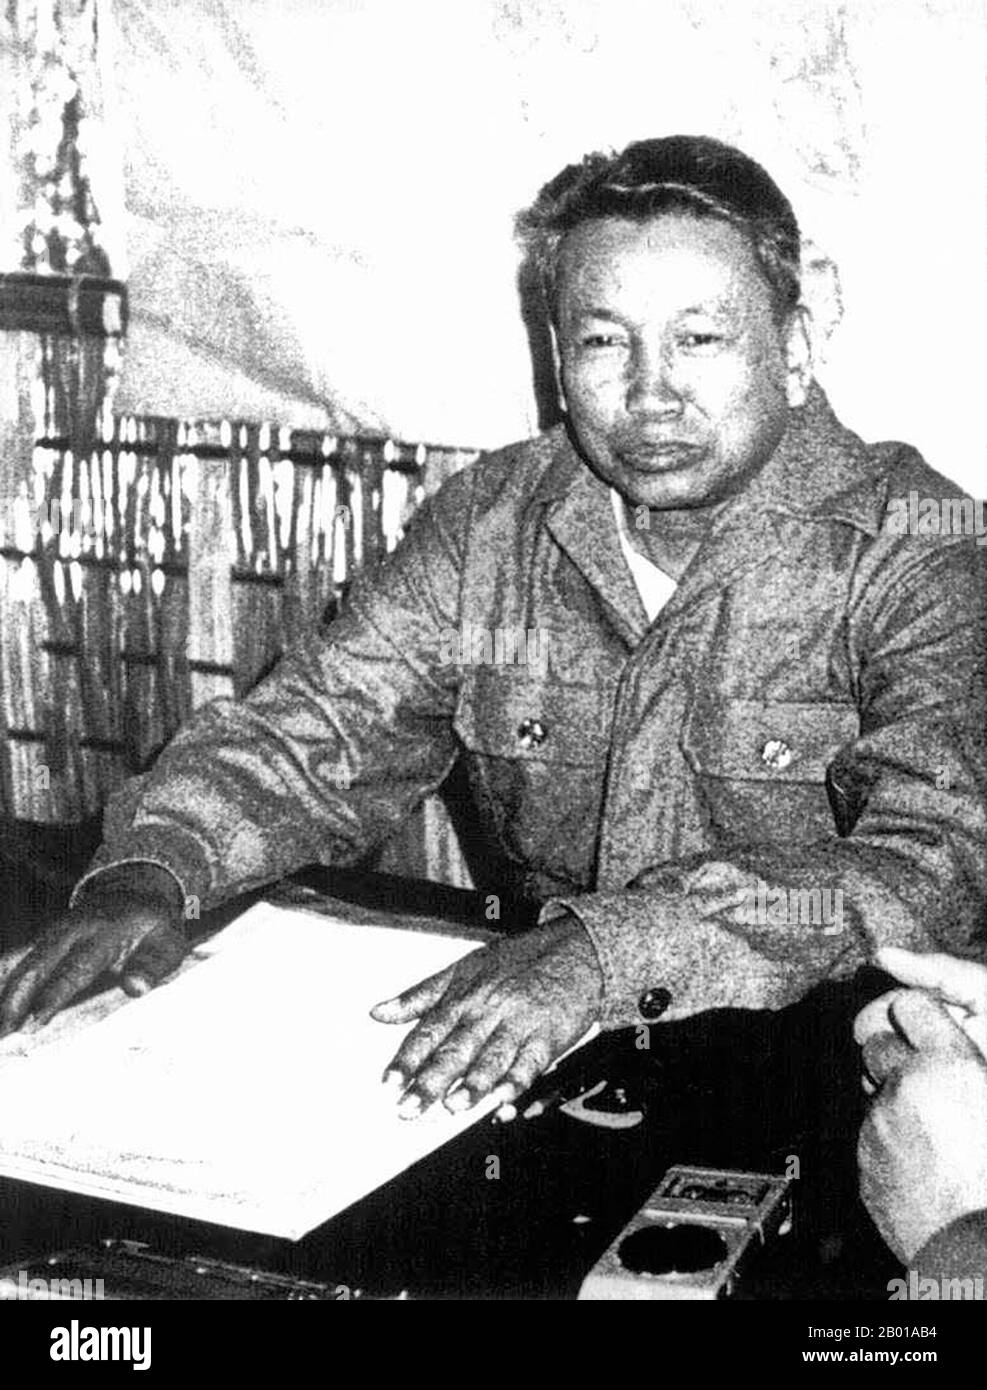 Kambodscha: Pol Pot (19. Mai 1928 – 15. April 1998), versteckt in der Nähe der thailändisch-kambodschanischen Grenze, 1979. Saloth Sar, besser bekannt als Pol Pot, war von 1976 bis 1979 der Führer der kambodschanischen kommunistischen Bewegung, bekannt als Khmer Rouge und Premierminister des Demokratischen Kampuchea. Im Jahr 1979, nach der Invasion Kambodschas durch Vietnam, floh Pol Pot in die Dschungel im Südwesten Kambodschas. Pol Pot starb 1998, als er von der Ta Mok-Fraktion der Roten Khmer unter Hausarrest gestellt wurde. Die Roten Khmer oder die Kommunistische Partei Kampucheas regierten Kambodscha von 1975 bis 1979 unter der Führung von Pol Pot, Nuon Chea, Ieng Sary und anderen. Stockfoto